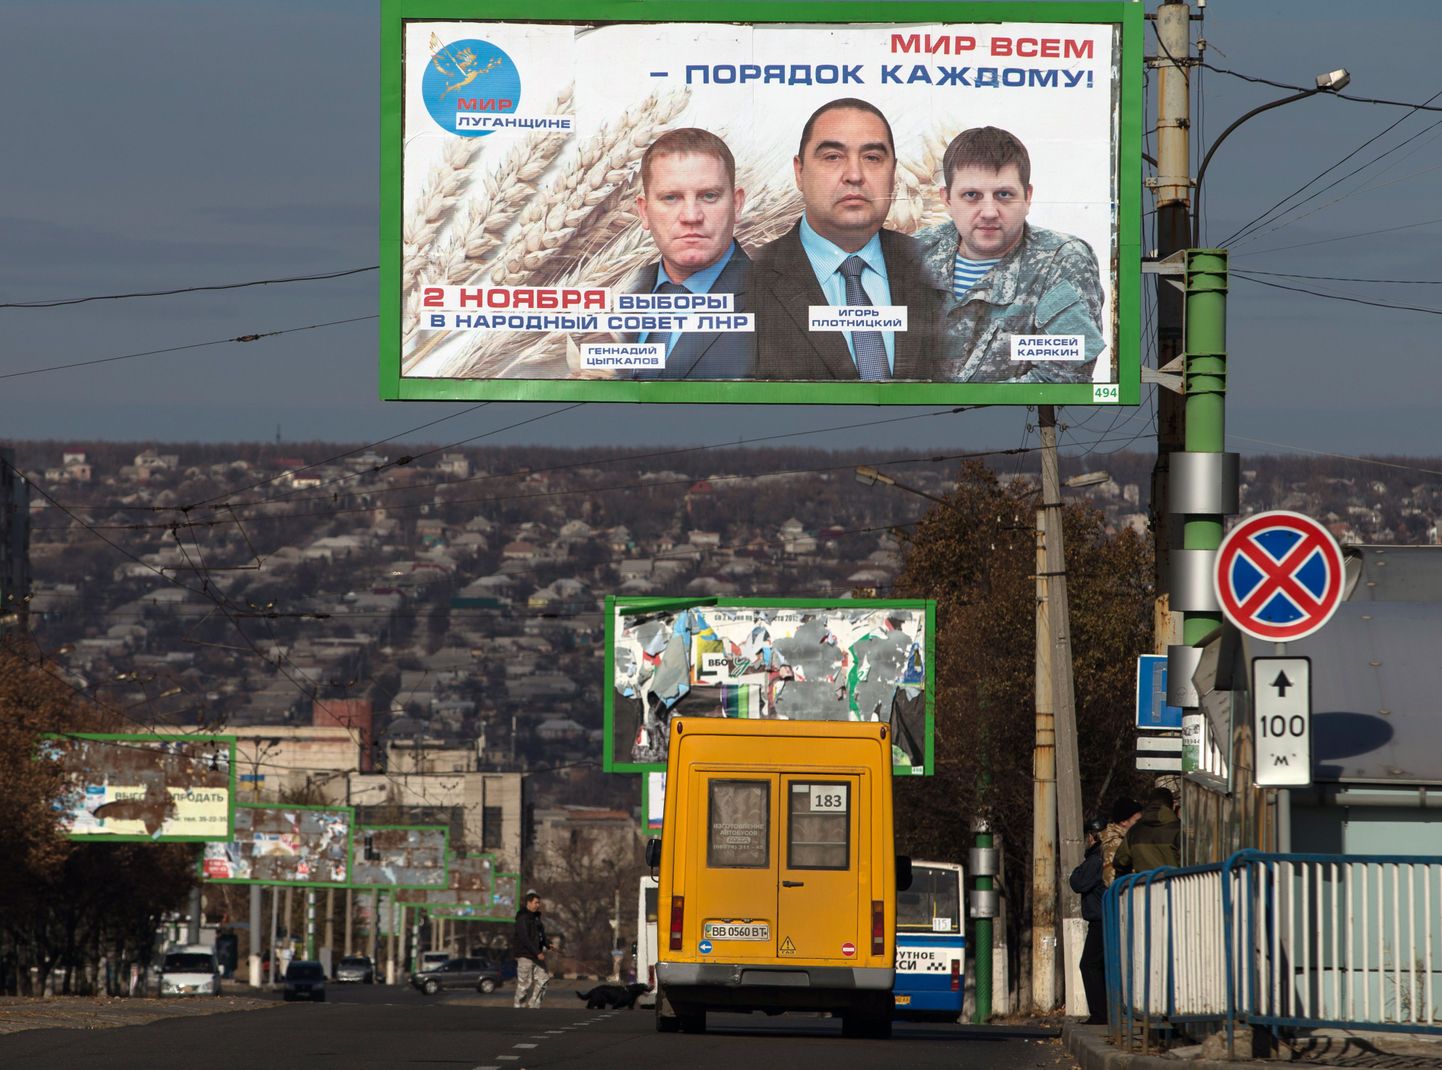 Donbassis valmistutakse 2. novembriks välja kuulutatud valimisteks.